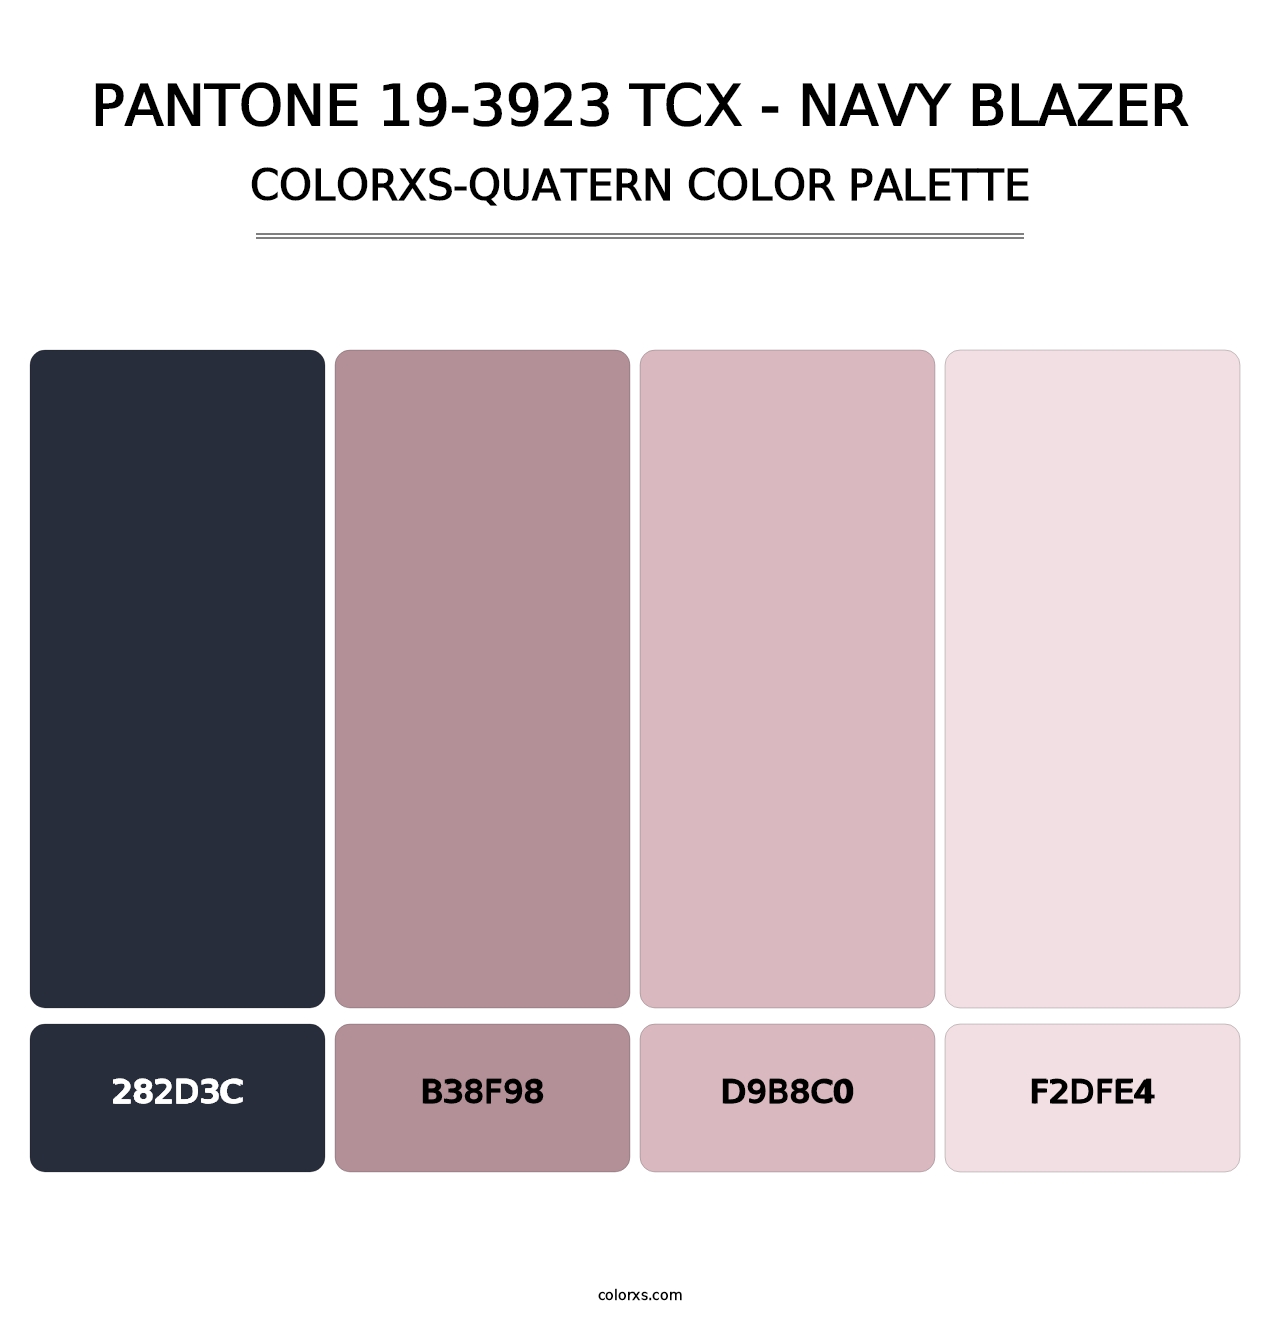 PANTONE 19-3923 TCX - Navy Blazer - Colorxs Quatern Palette